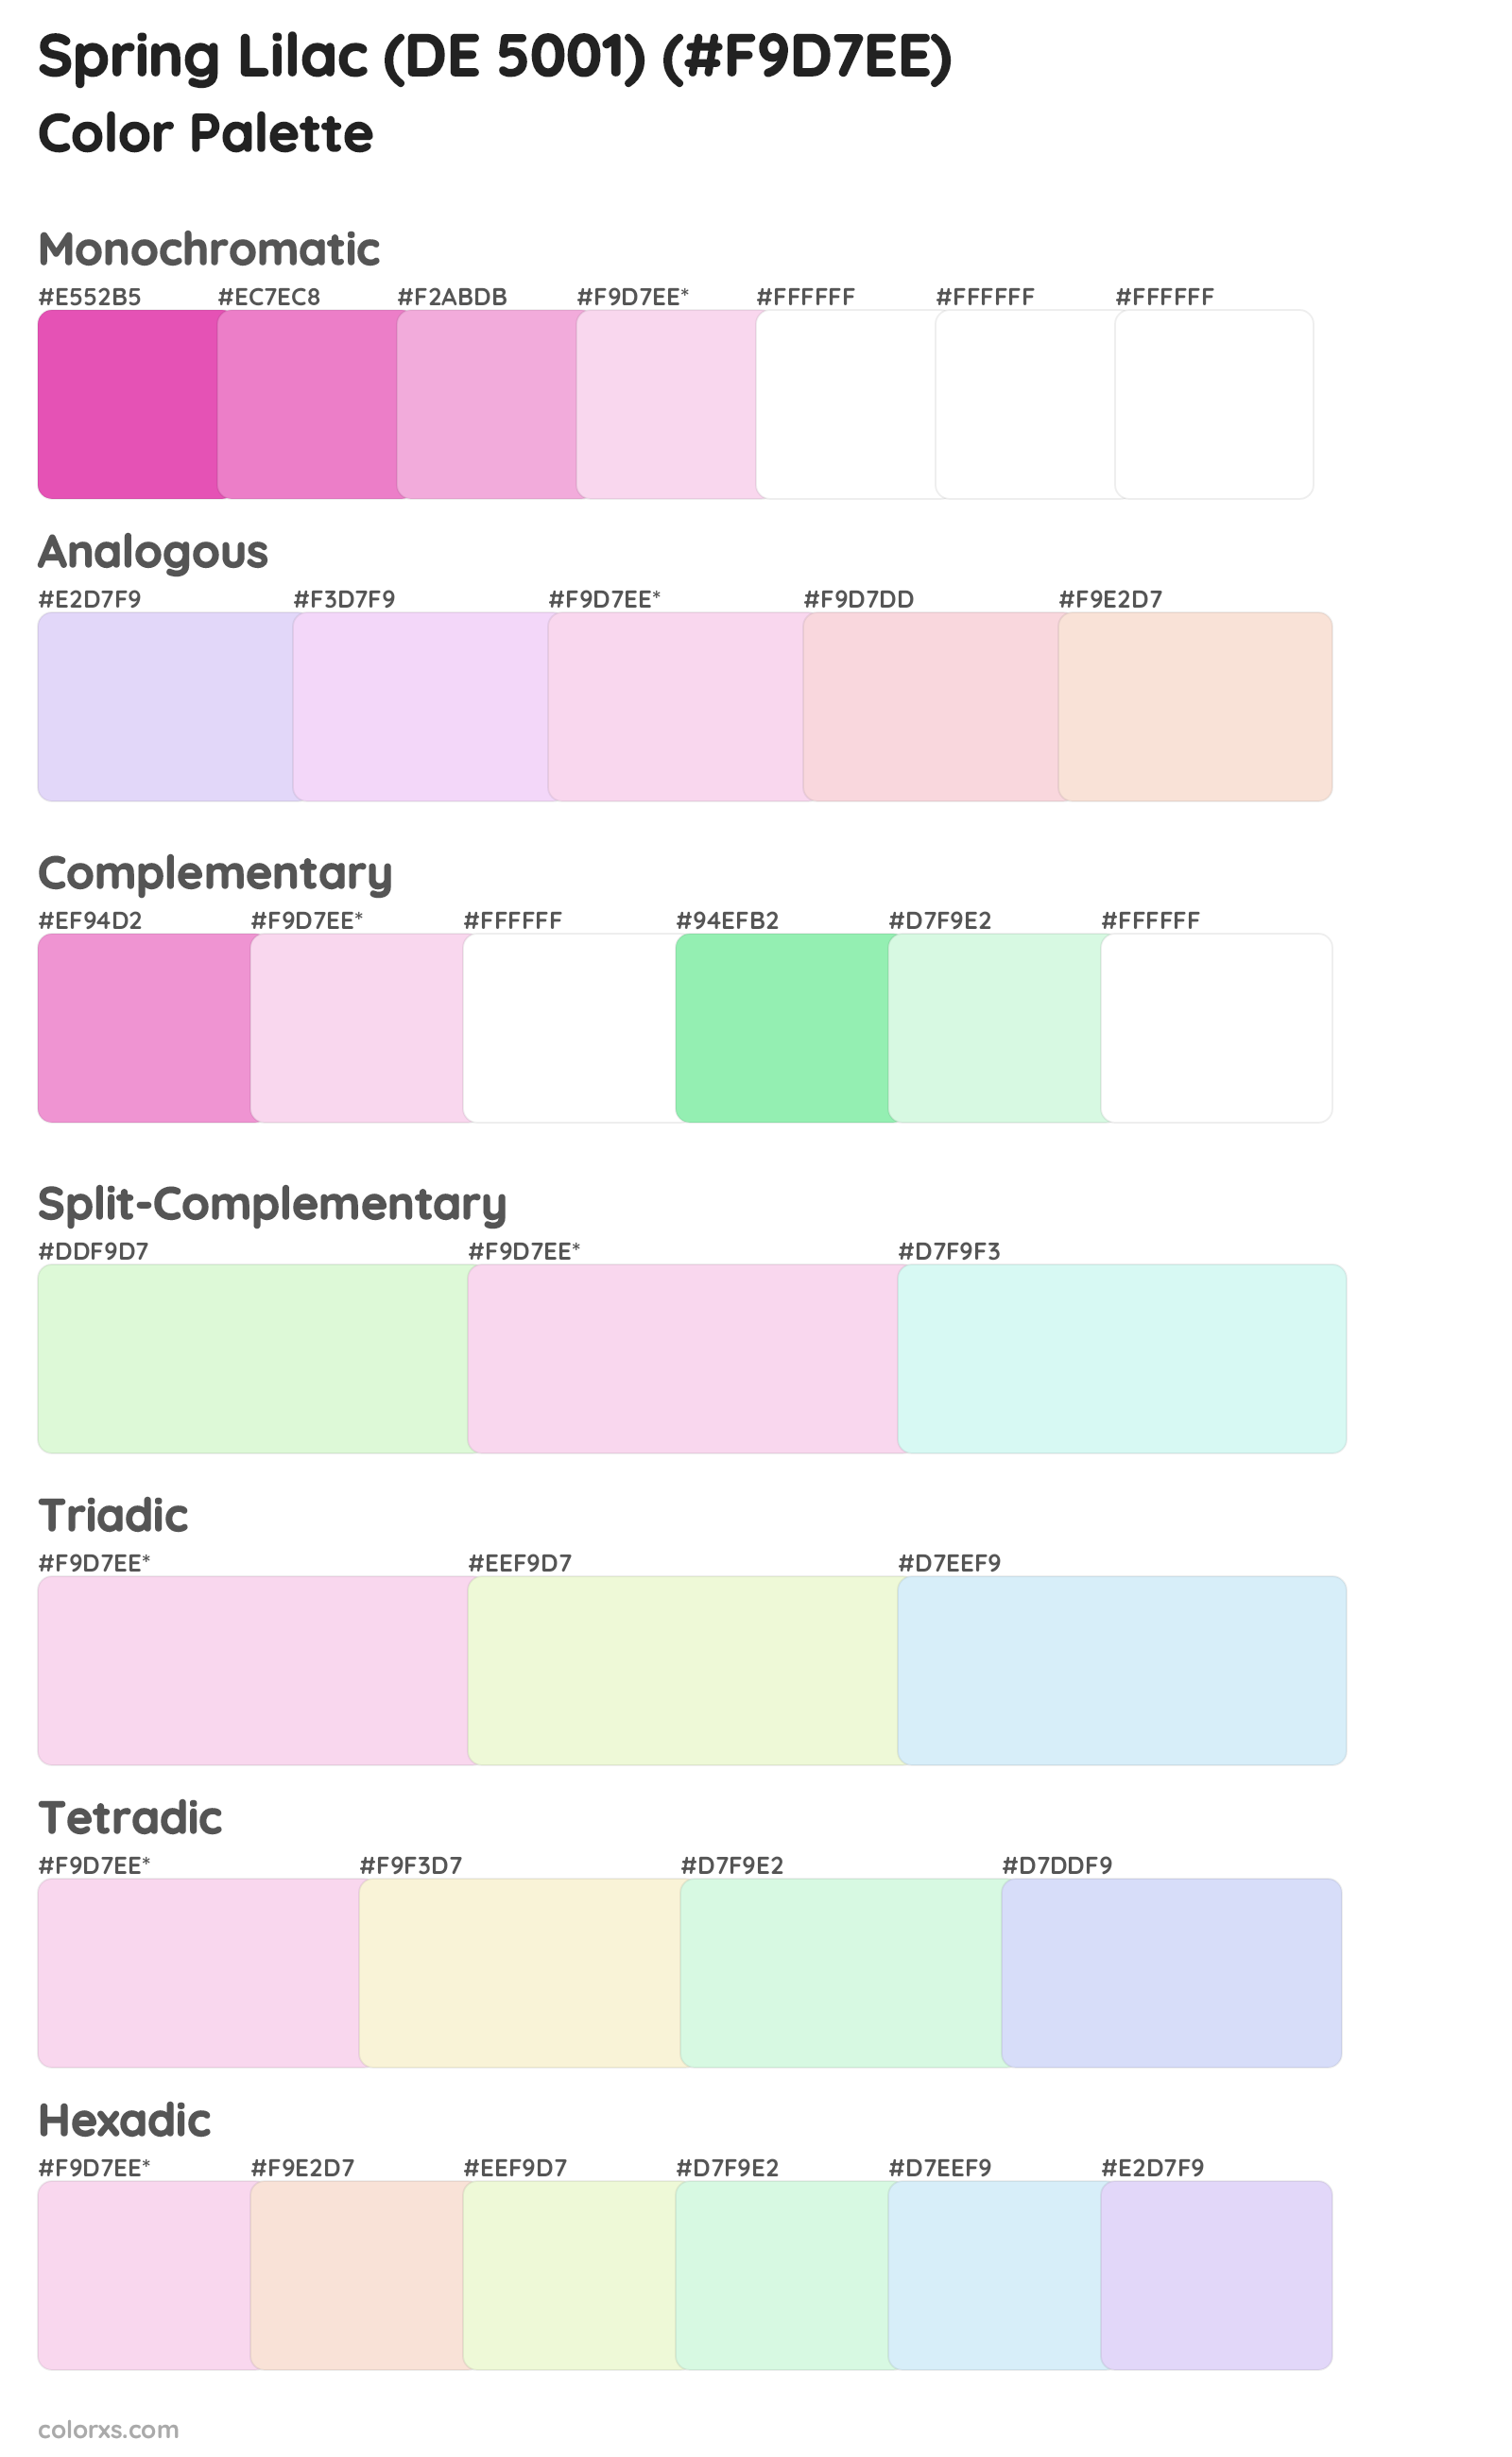 Spring Lilac (DE 5001) Color Scheme Palettes